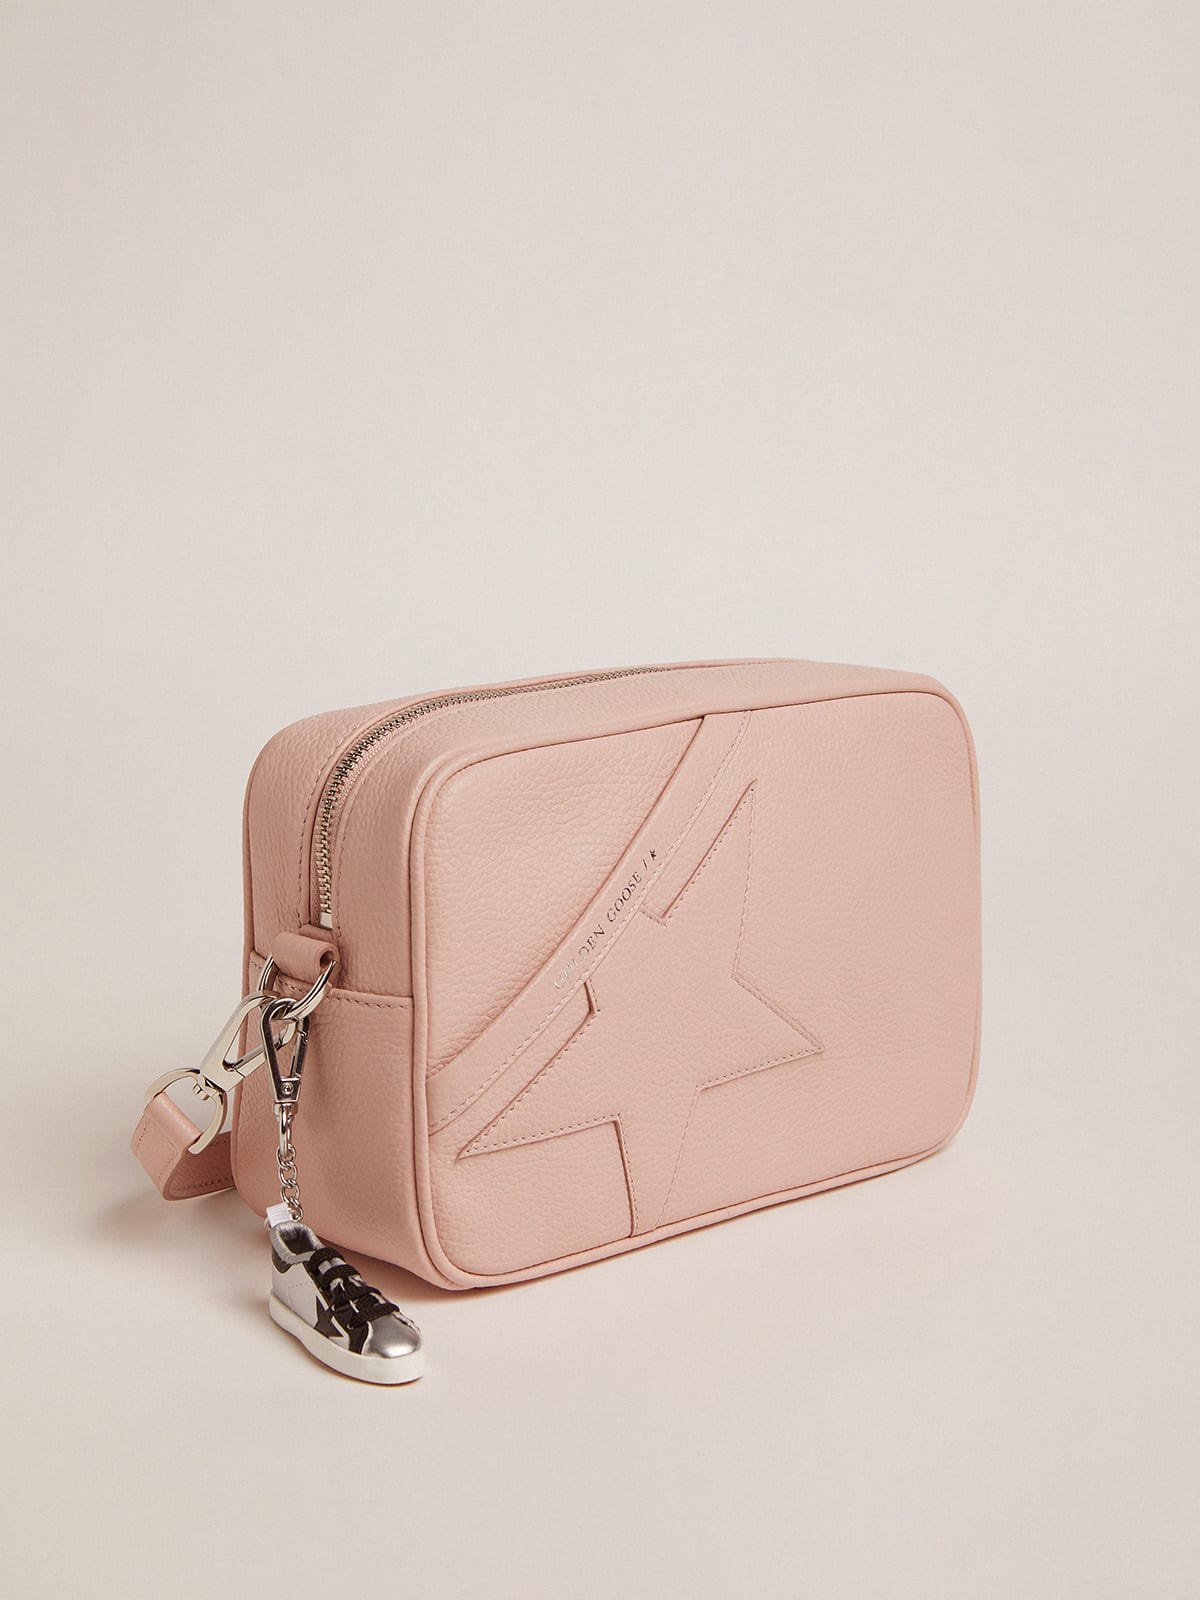 Golden Goose - Borsa Star Bag in pelle martellata color rosa quarzo e stella ton sur ton in 